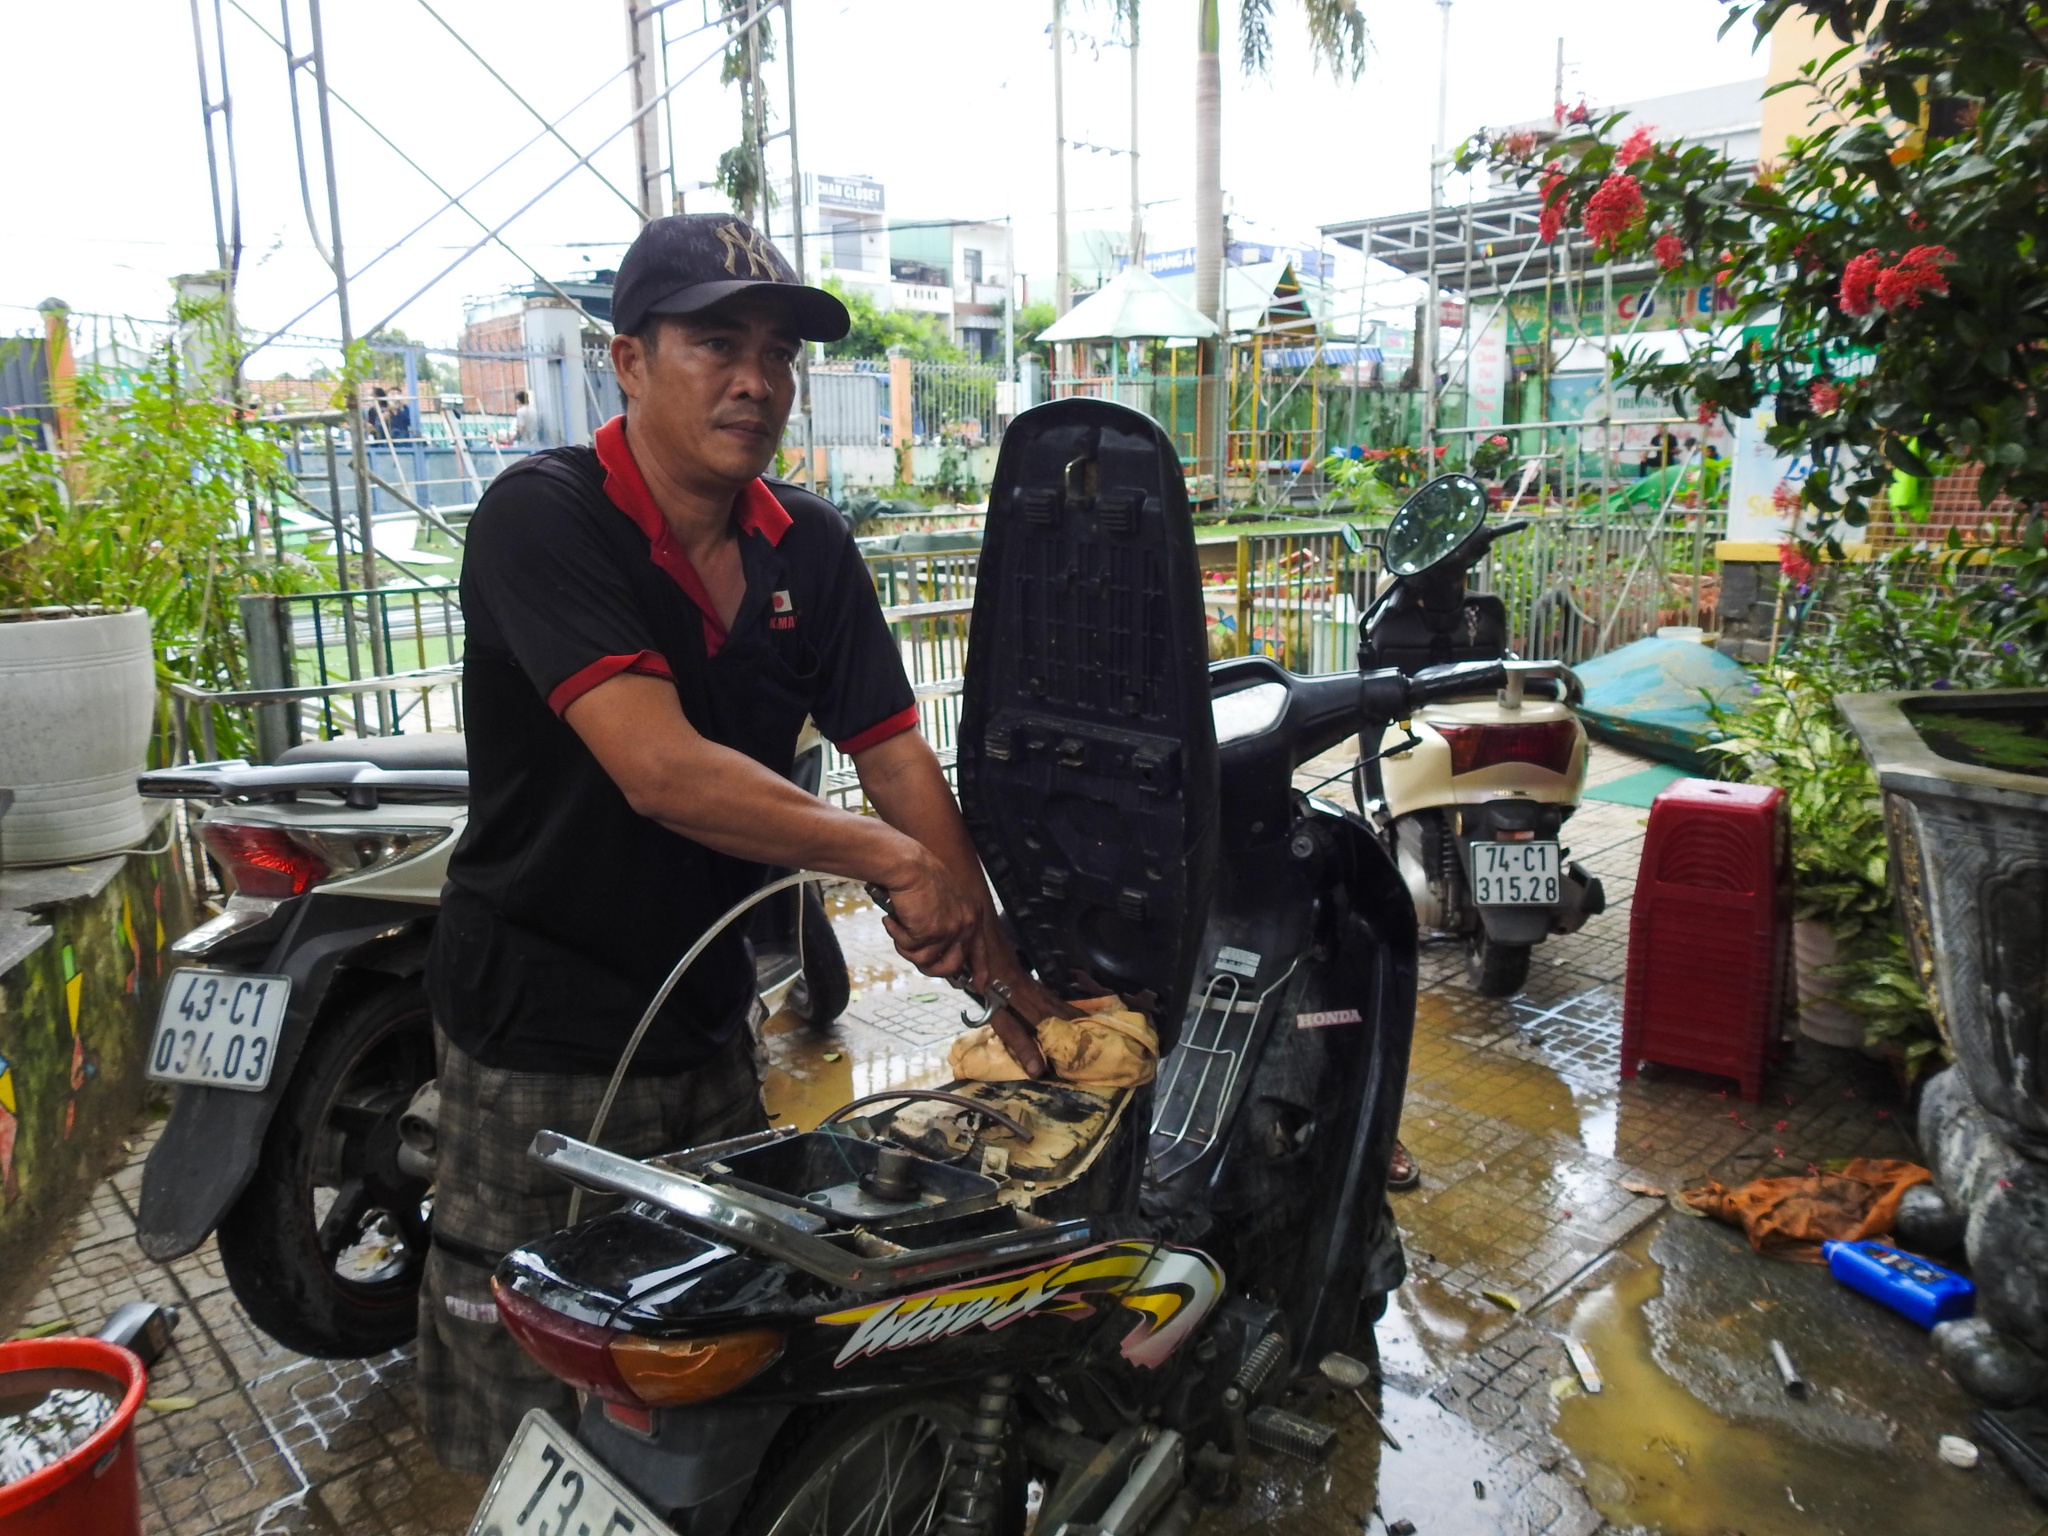 Nhóm thợ xứ Quảng ăn cơm hộp, ngủ nhà nghỉ sửa xe miễn phí cho sinh viên - ảnh 9